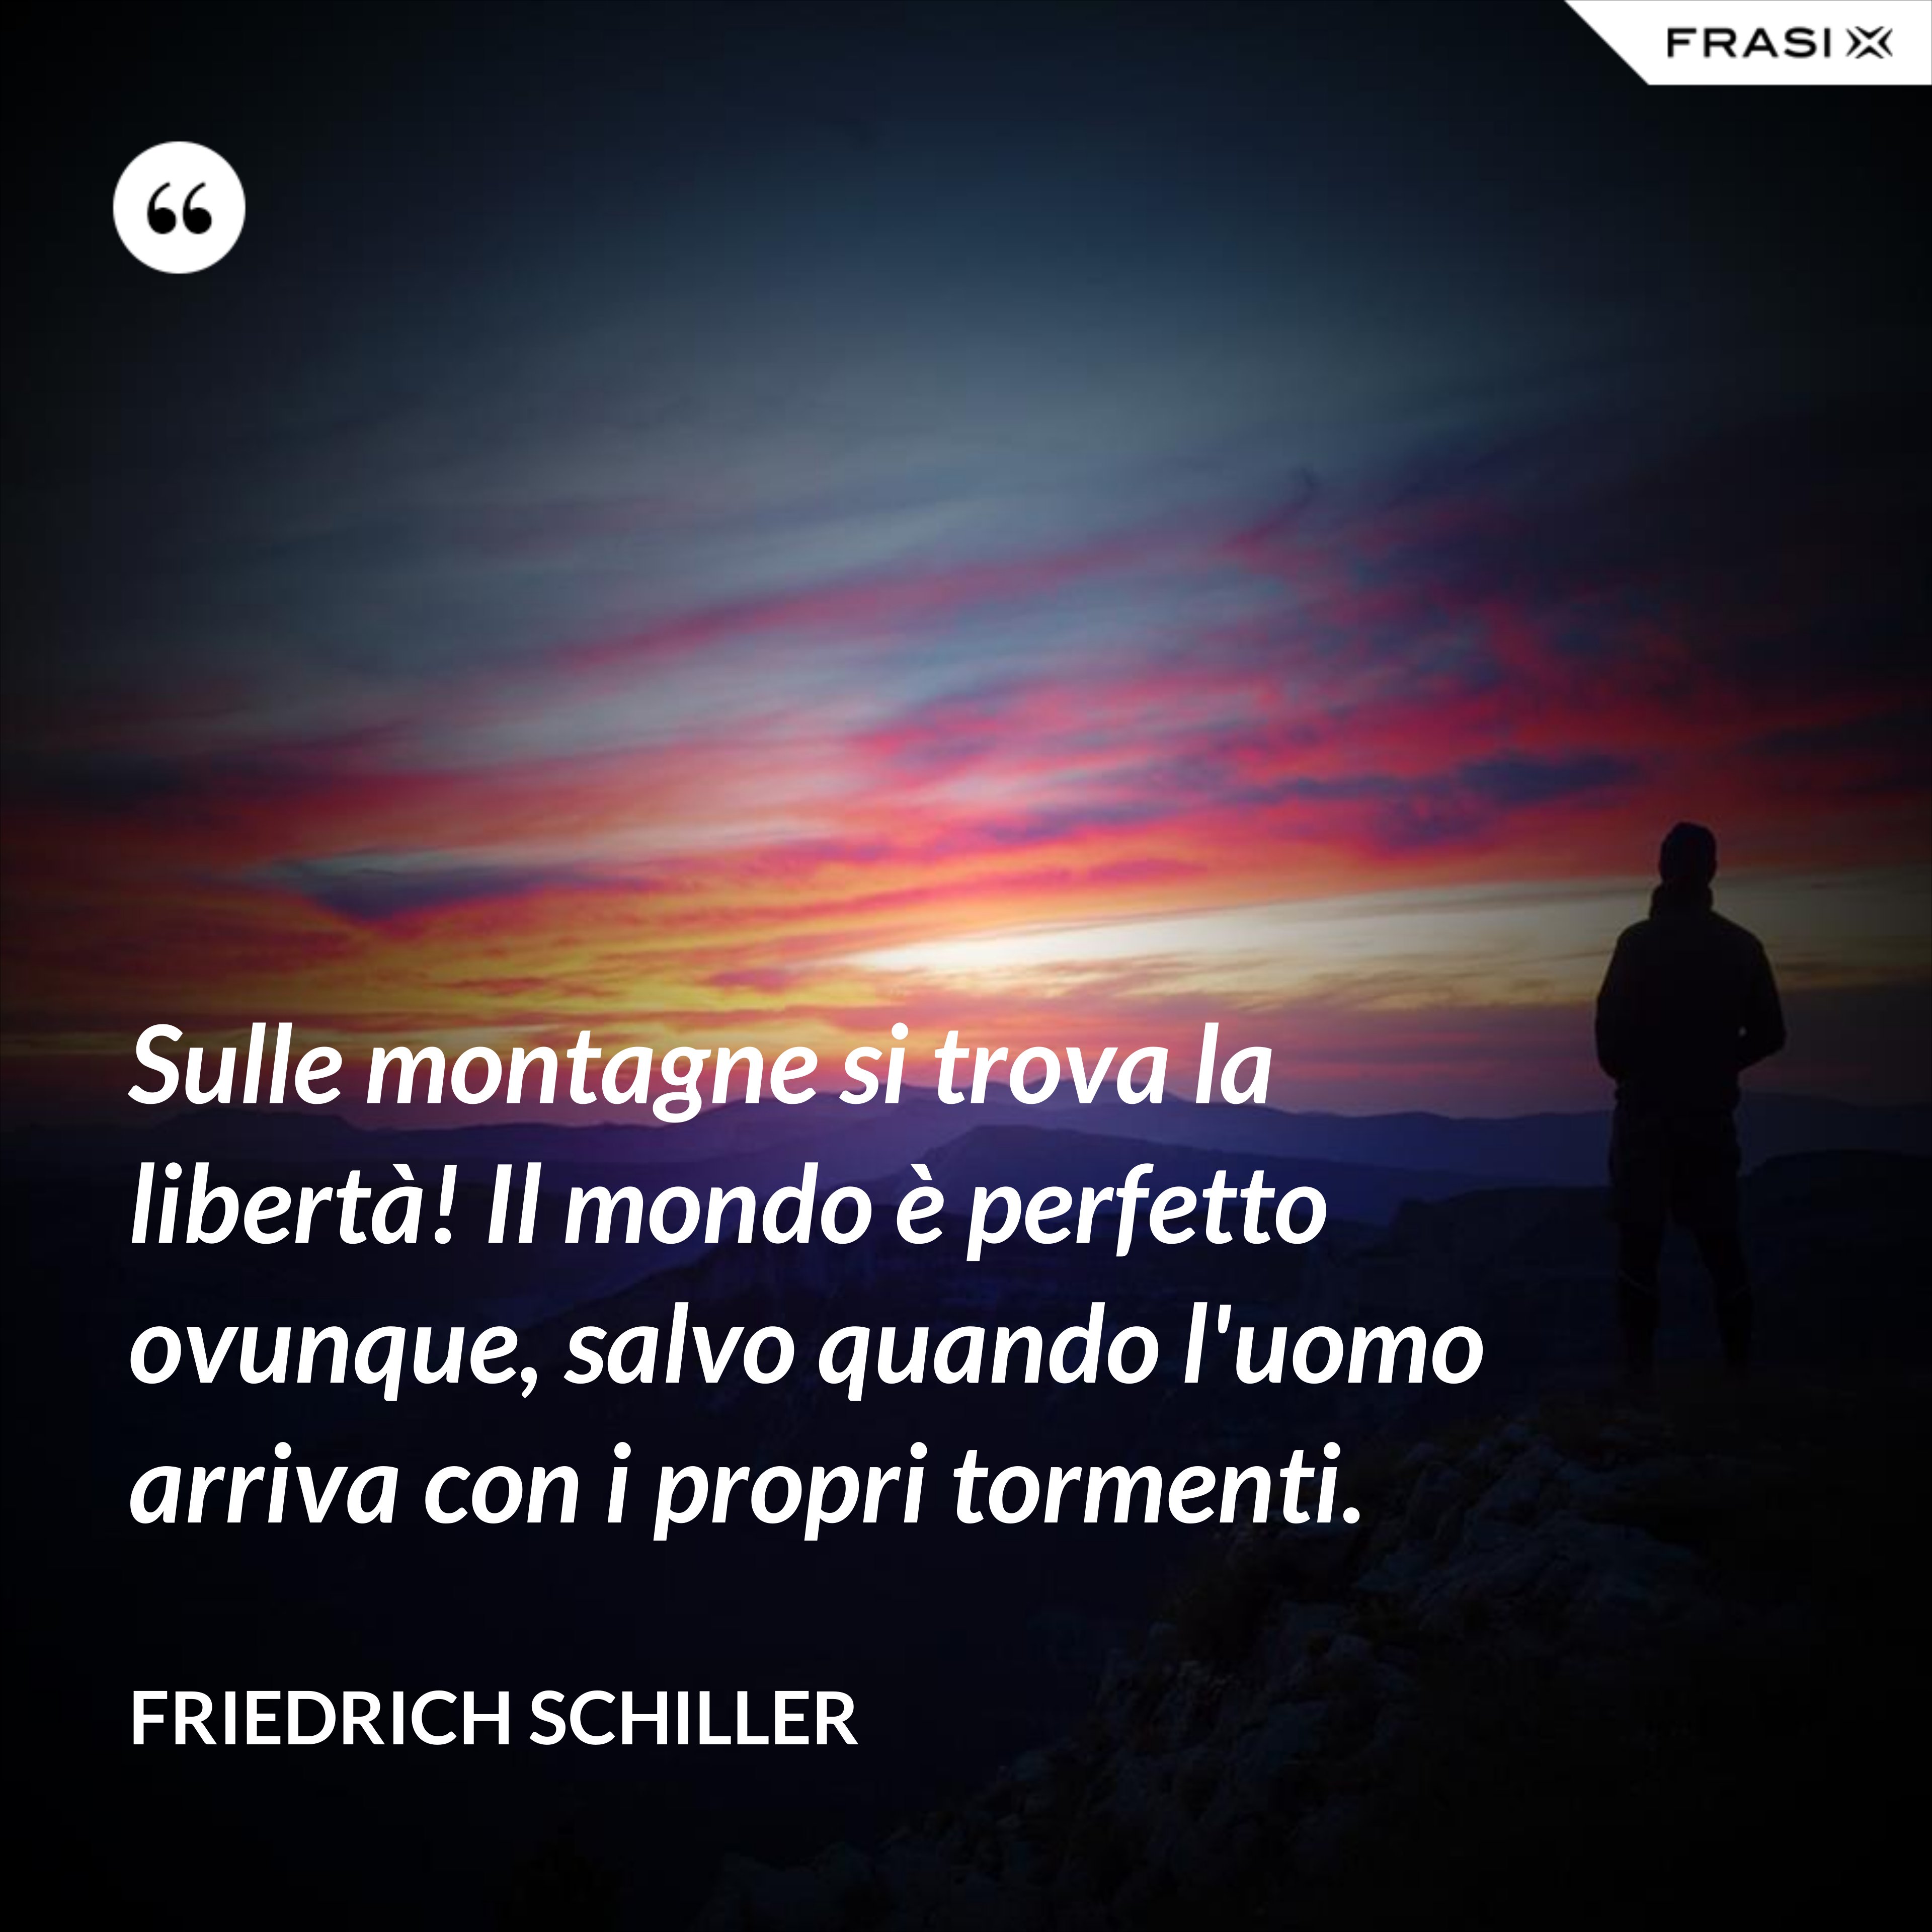 Sulle montagne si trova la libertà! Il mondo è perfetto ovunque, salvo quando l'uomo arriva con i propri tormenti. - Friedrich Schiller